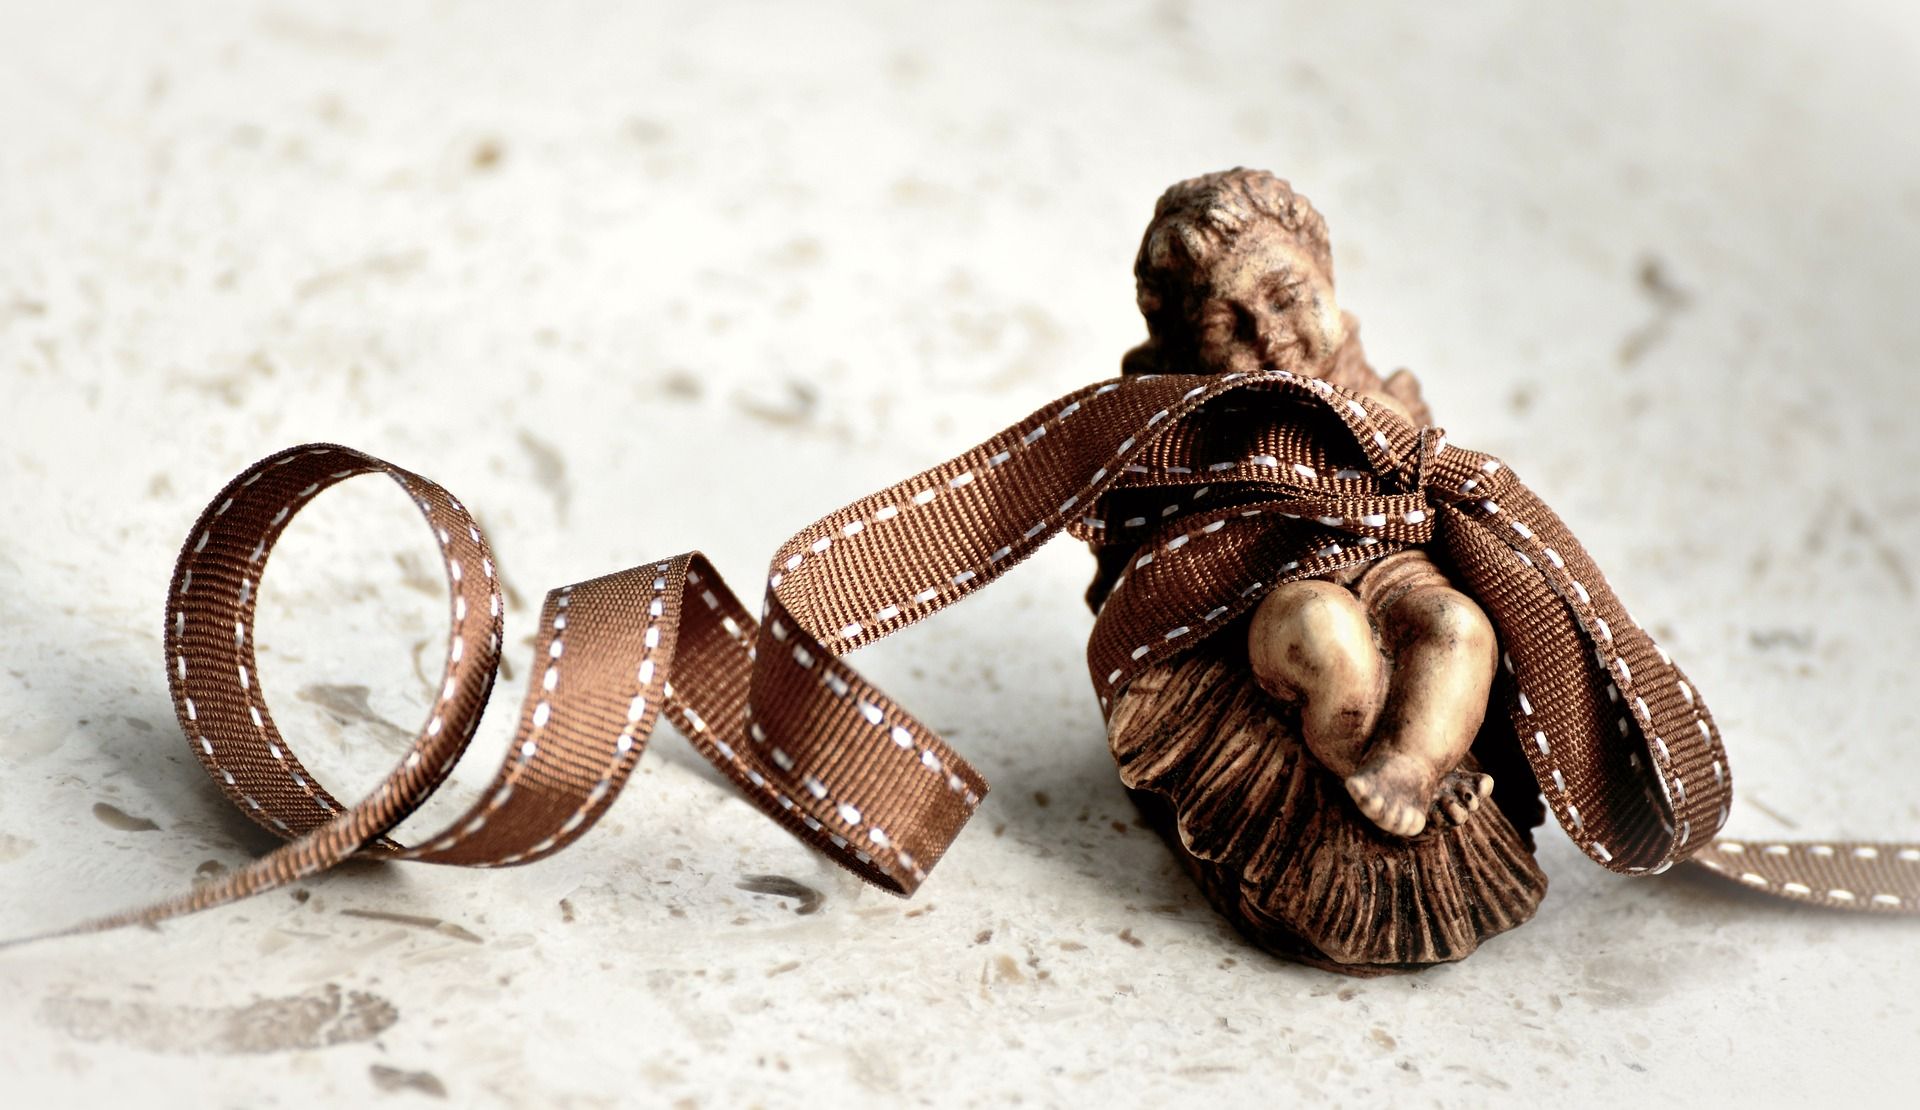 Jésus dans la crèche figuré par un santon emballé d'un bolduc - Image par congerdesign de https://pixabay.com/fr/photos/no%C3%ABl-conte-de-no%C3%ABl-bible-3701985/